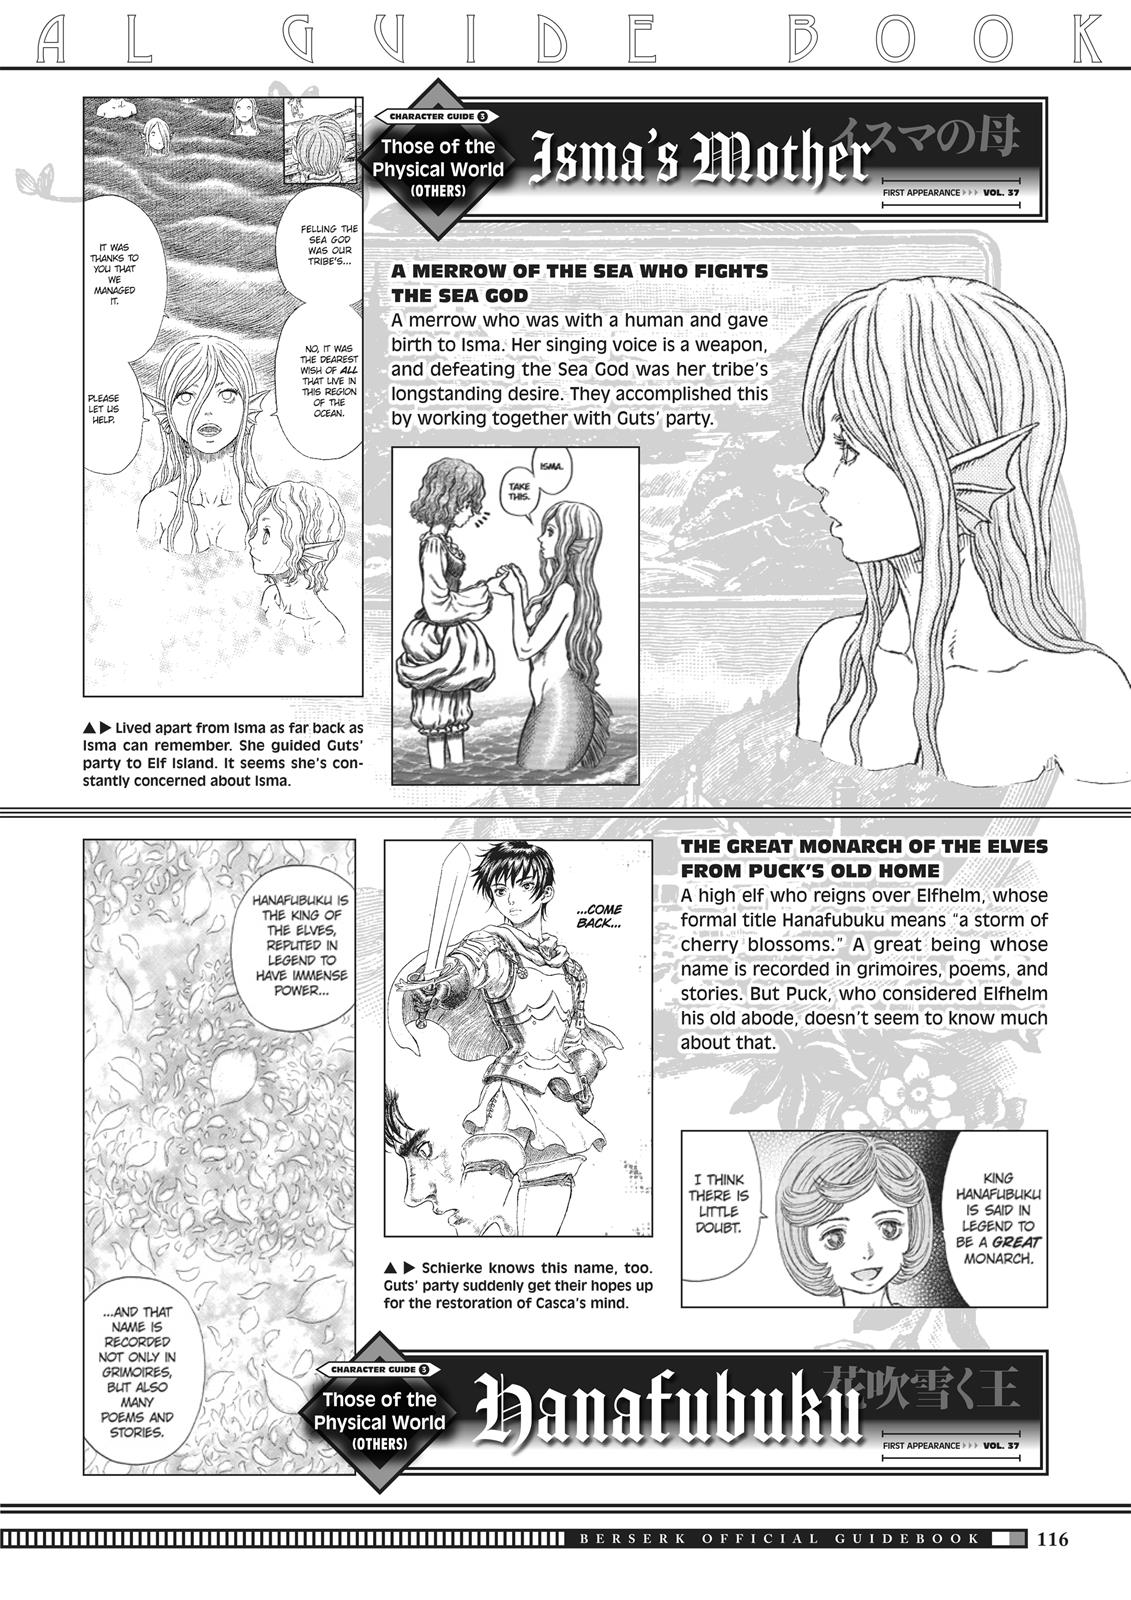 Berserk Manga Chapter 350.5 image 114